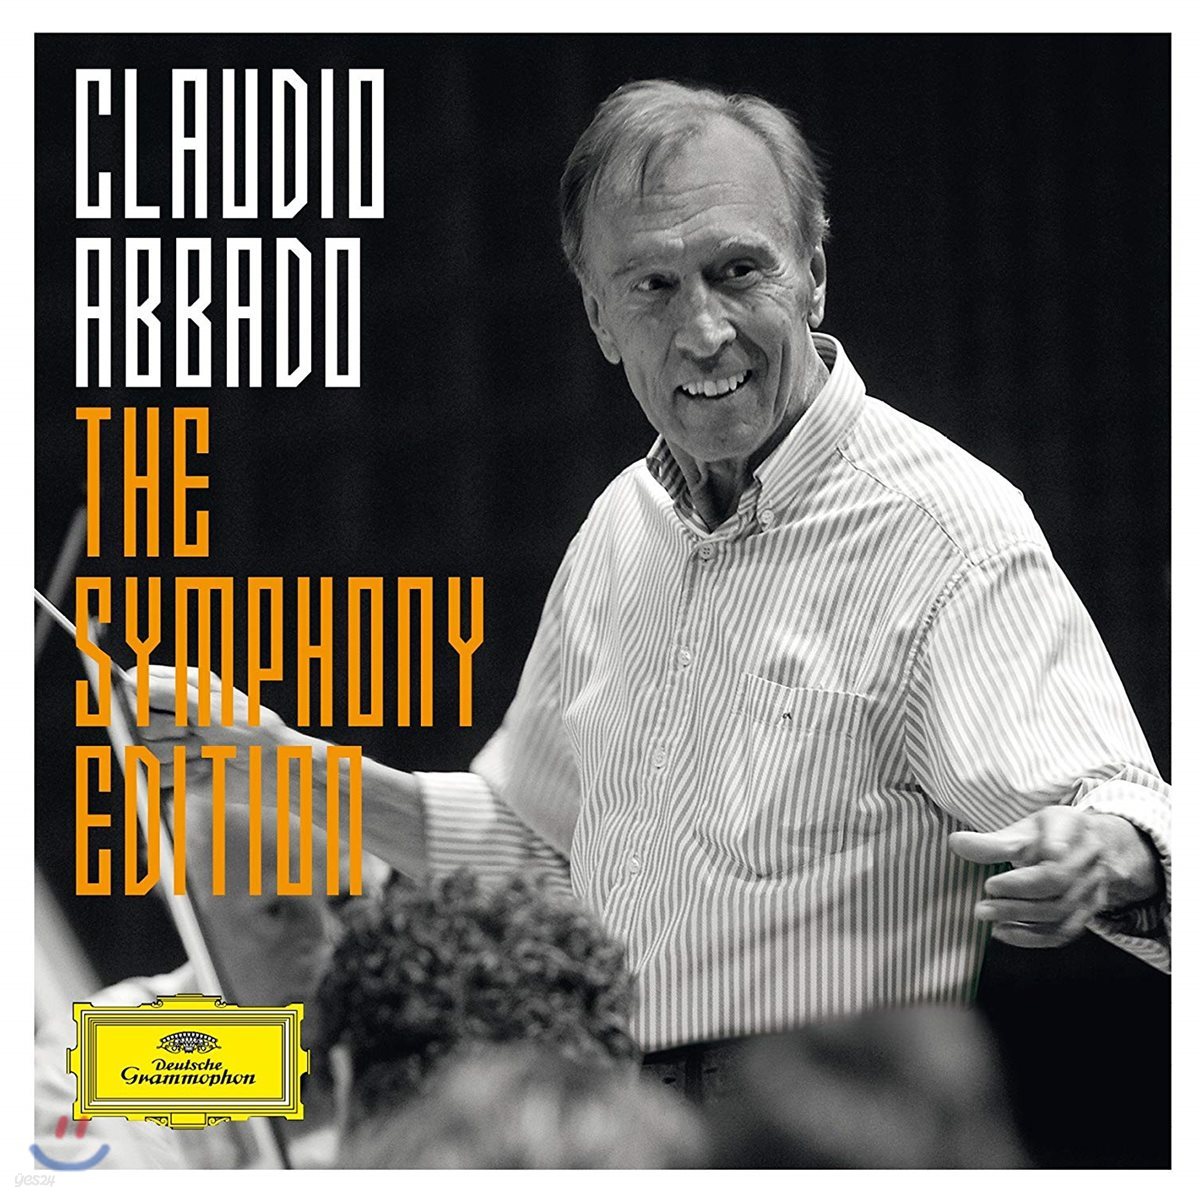 클라우디오 아바도 심포니 에디션 (Claudio Abbado: The Symphony Edition)